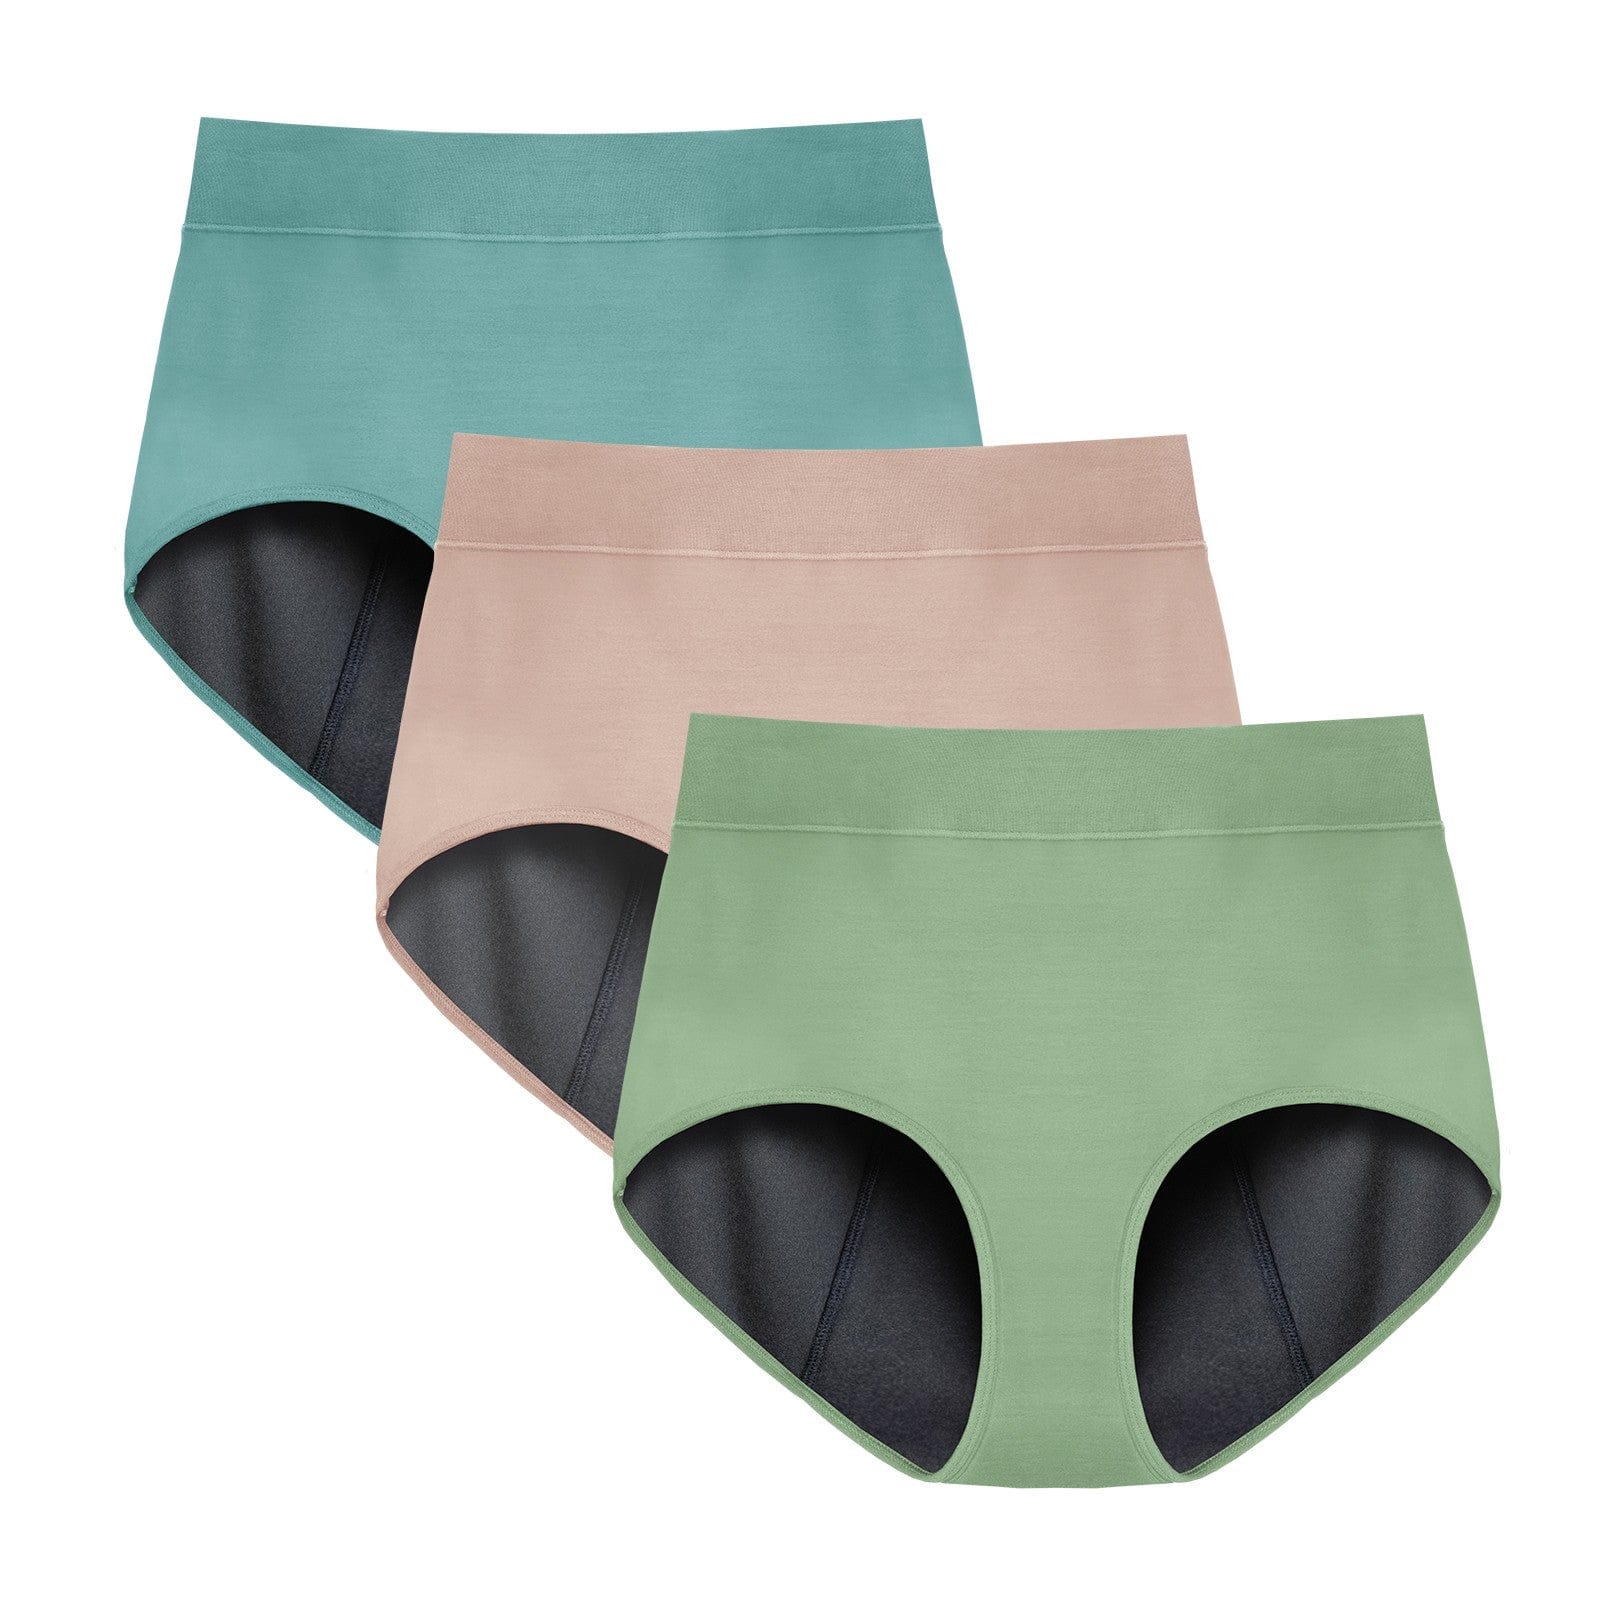 TIICHOO Period Underwear for Women Heavy Flow Silky Soft Absorbent